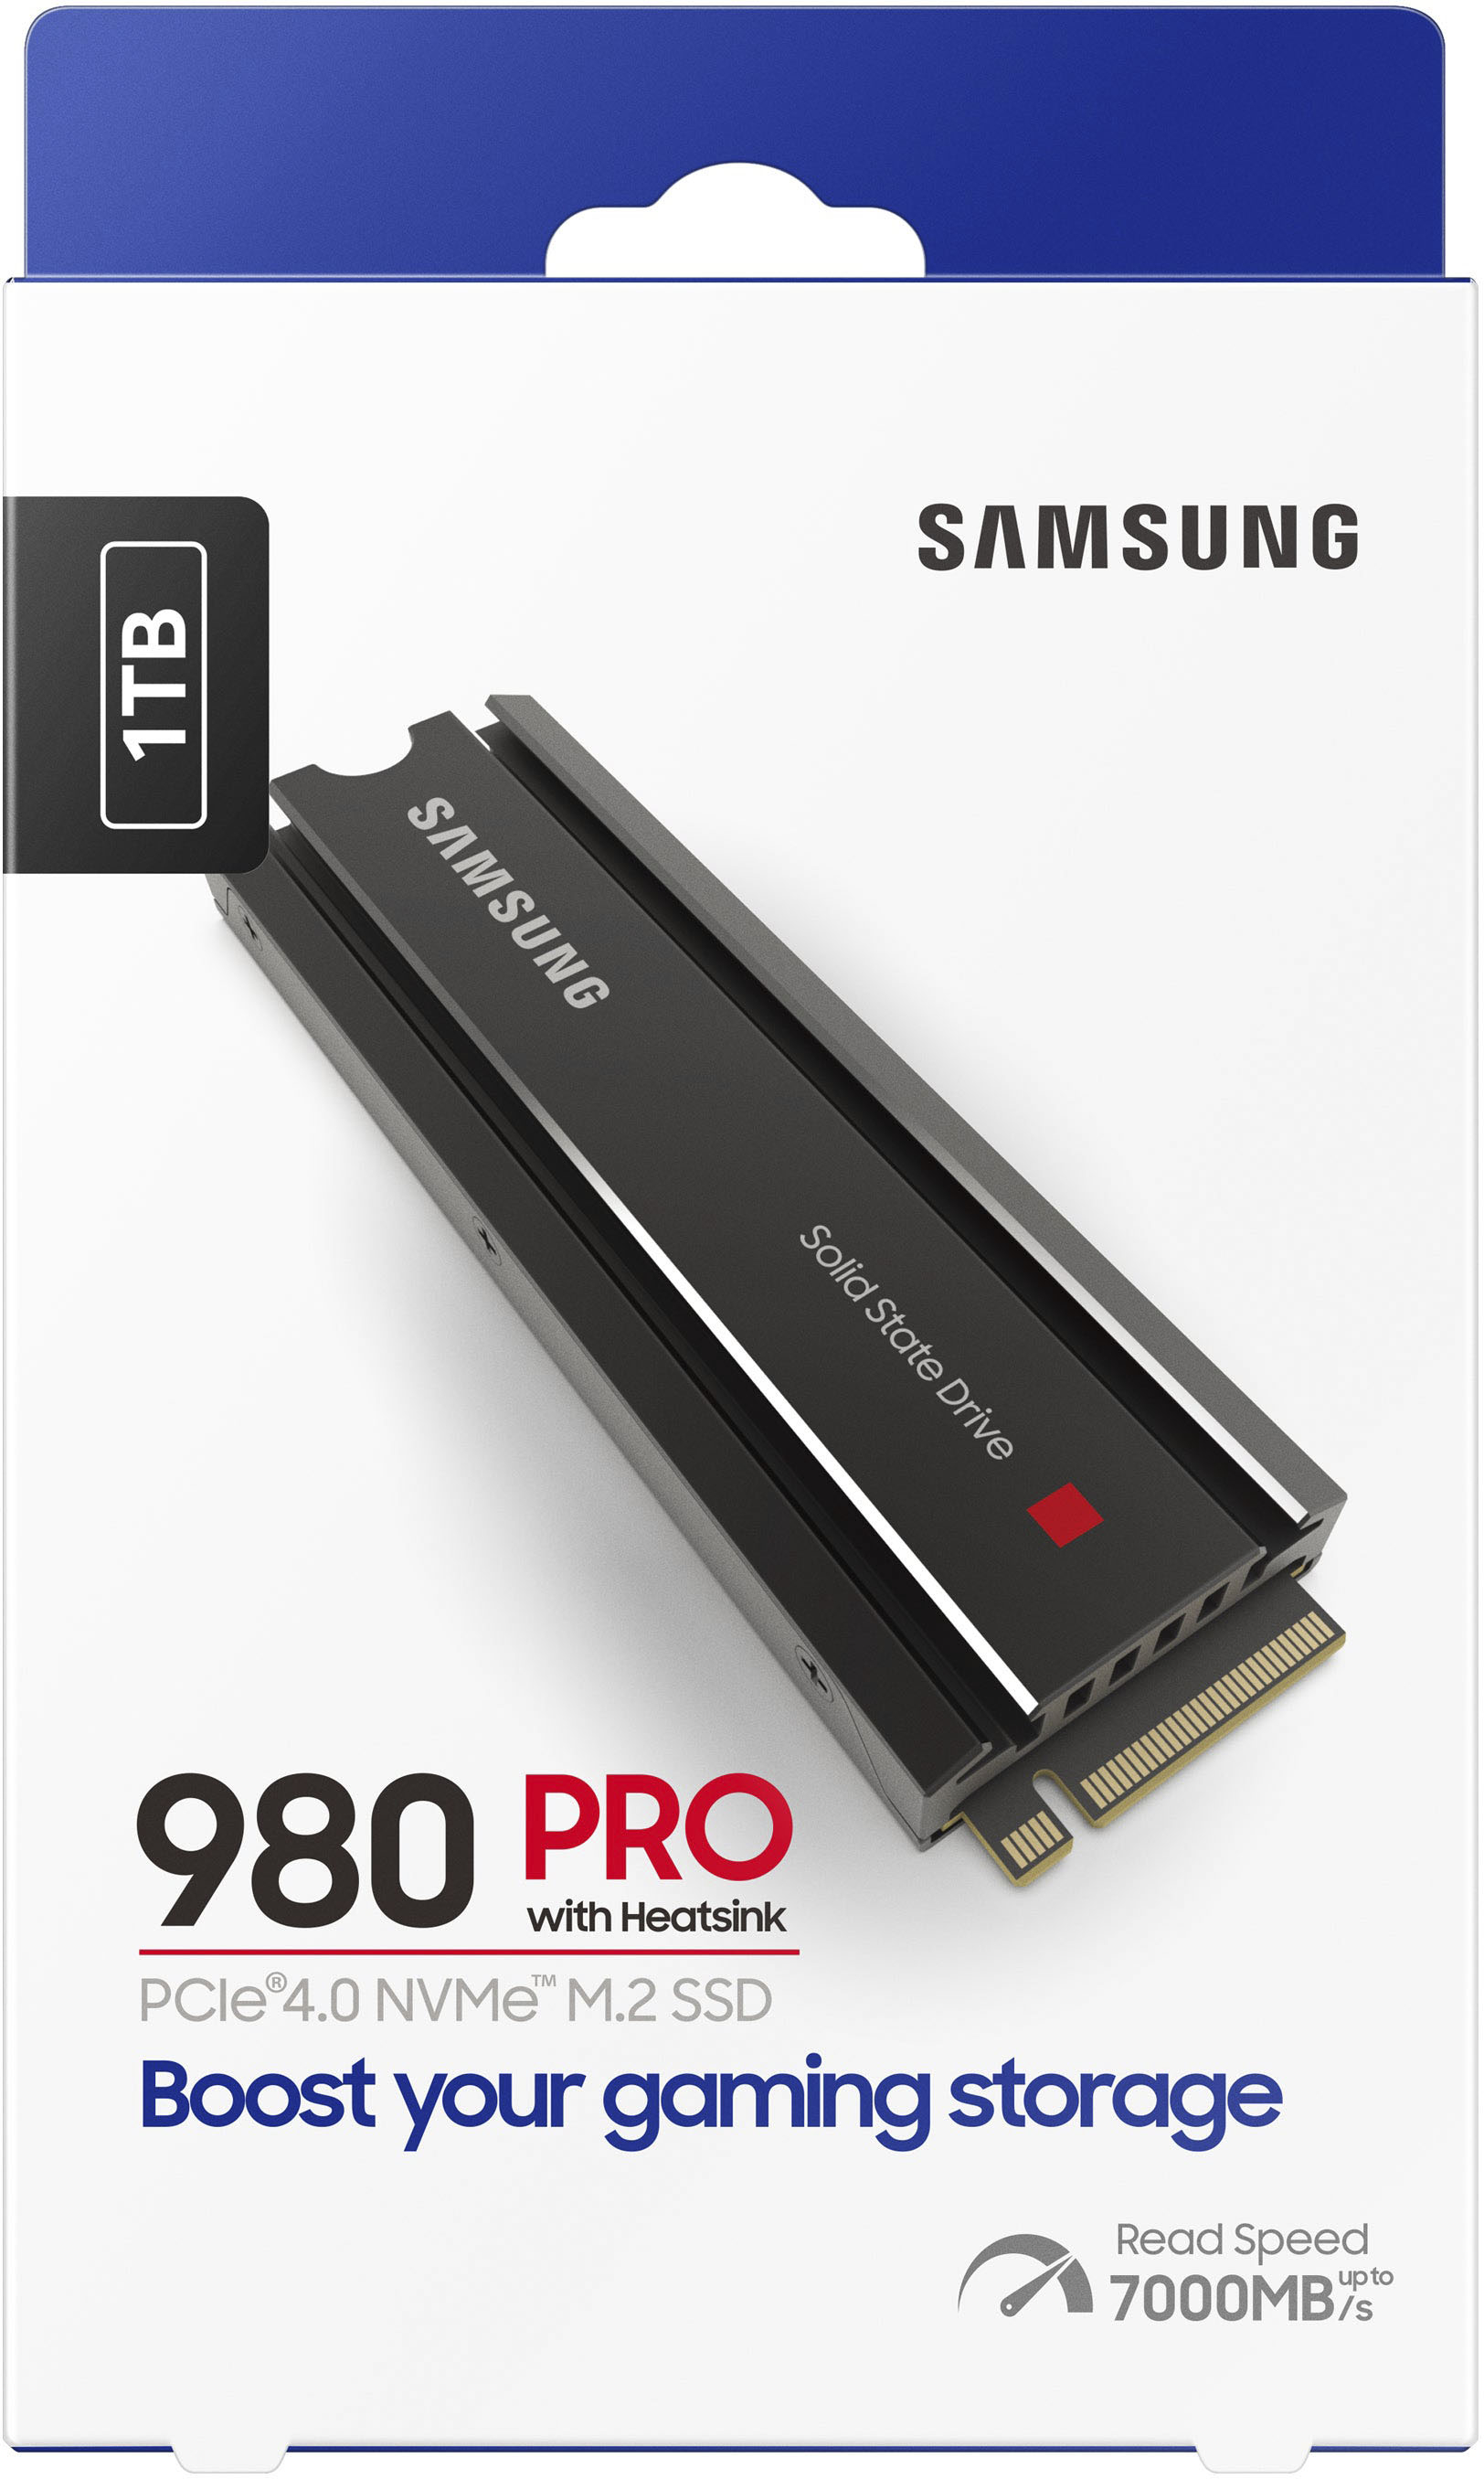 Samsung 980 PRO Heatsink 1TB Internal SSD PCIe Gen 4 x4 NVMe for 